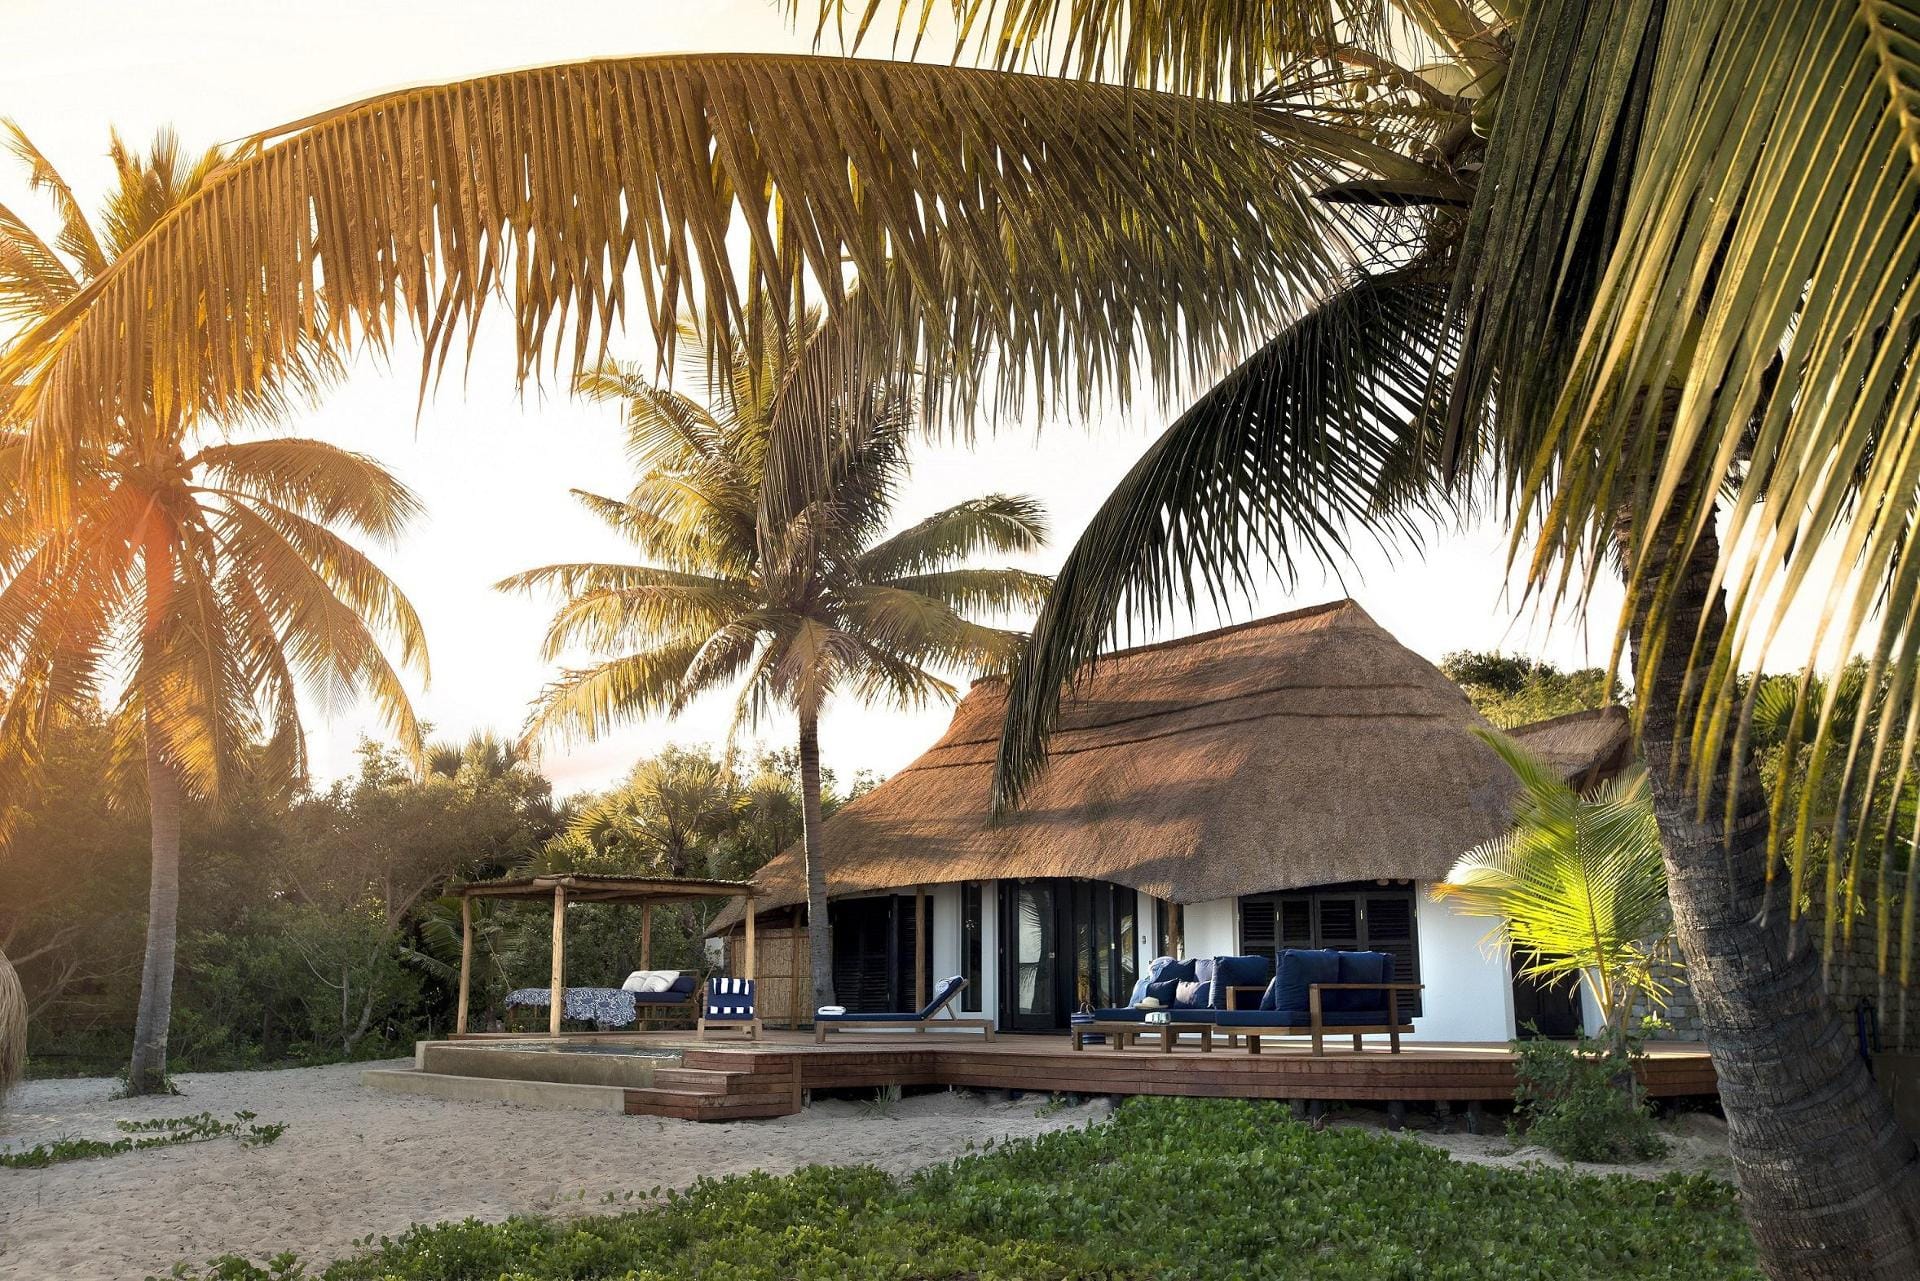 Barfußurlaub mit Out-of-Afrika-Feeling erleben die Besucher der Insel Benguerra vor der Küste Mosambiks.